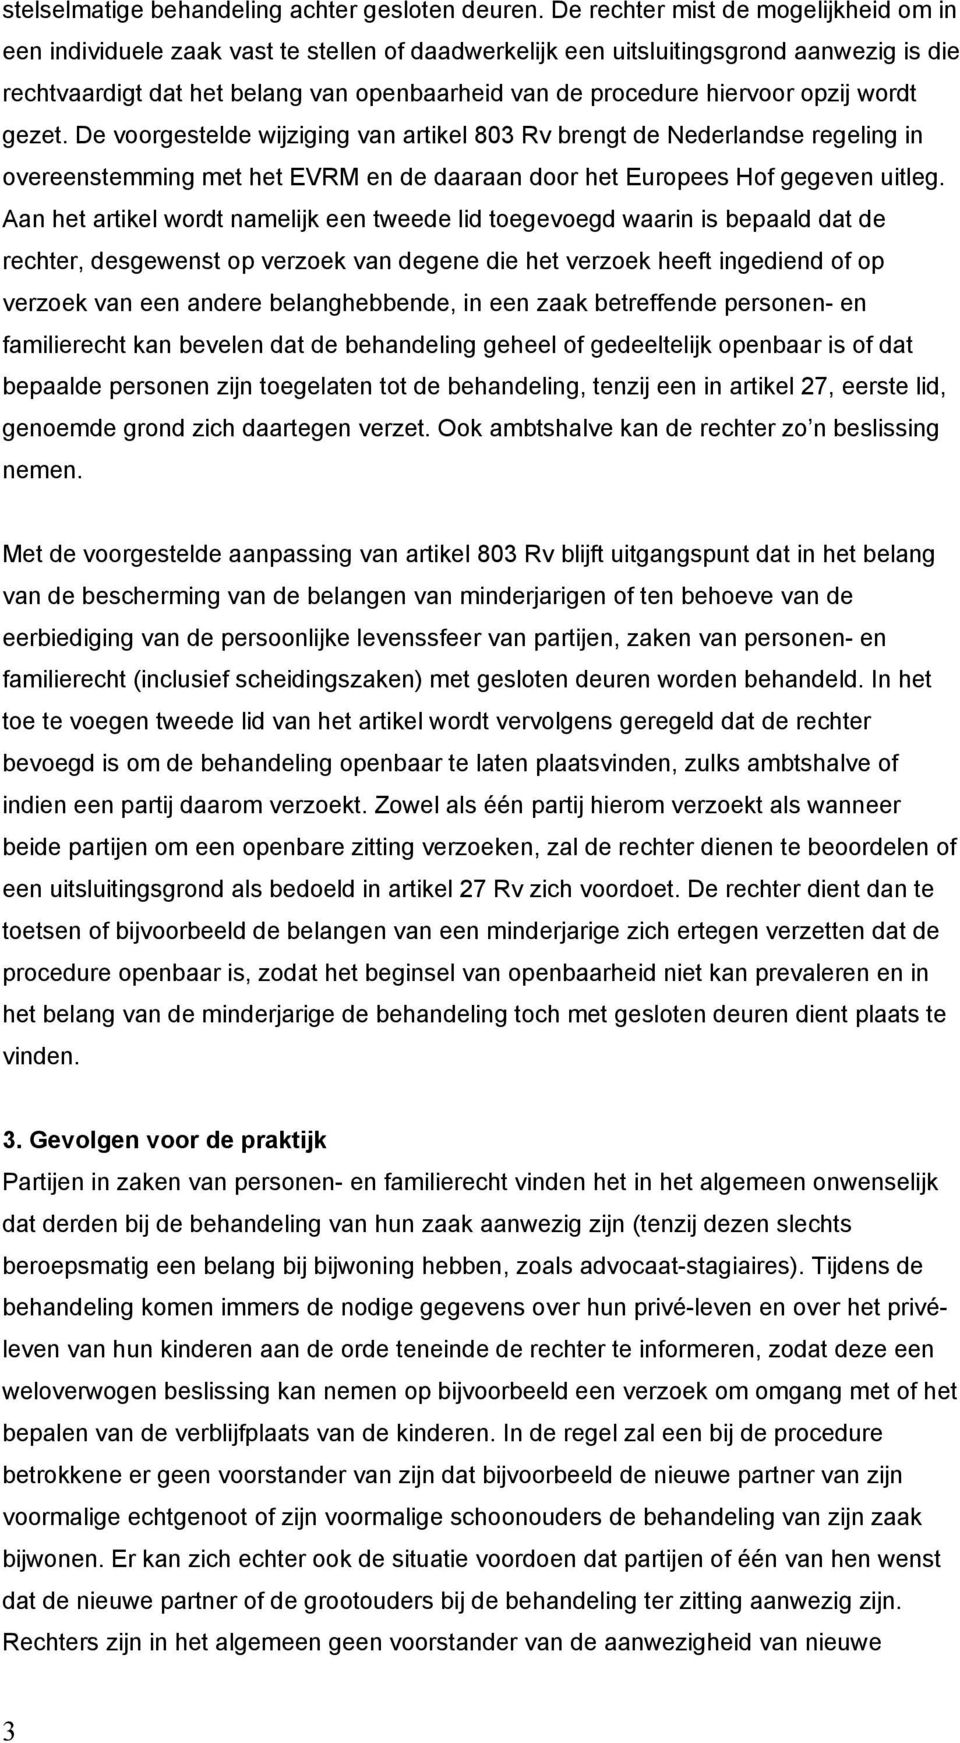 hiervoor opzij wordt gezet. De voorgestelde wijziging van artikel 803 Rv brengt de Nederlandse regeling in overeenstemming met het EVRM en de daaraan door het Europees Hof gegeven uitleg.